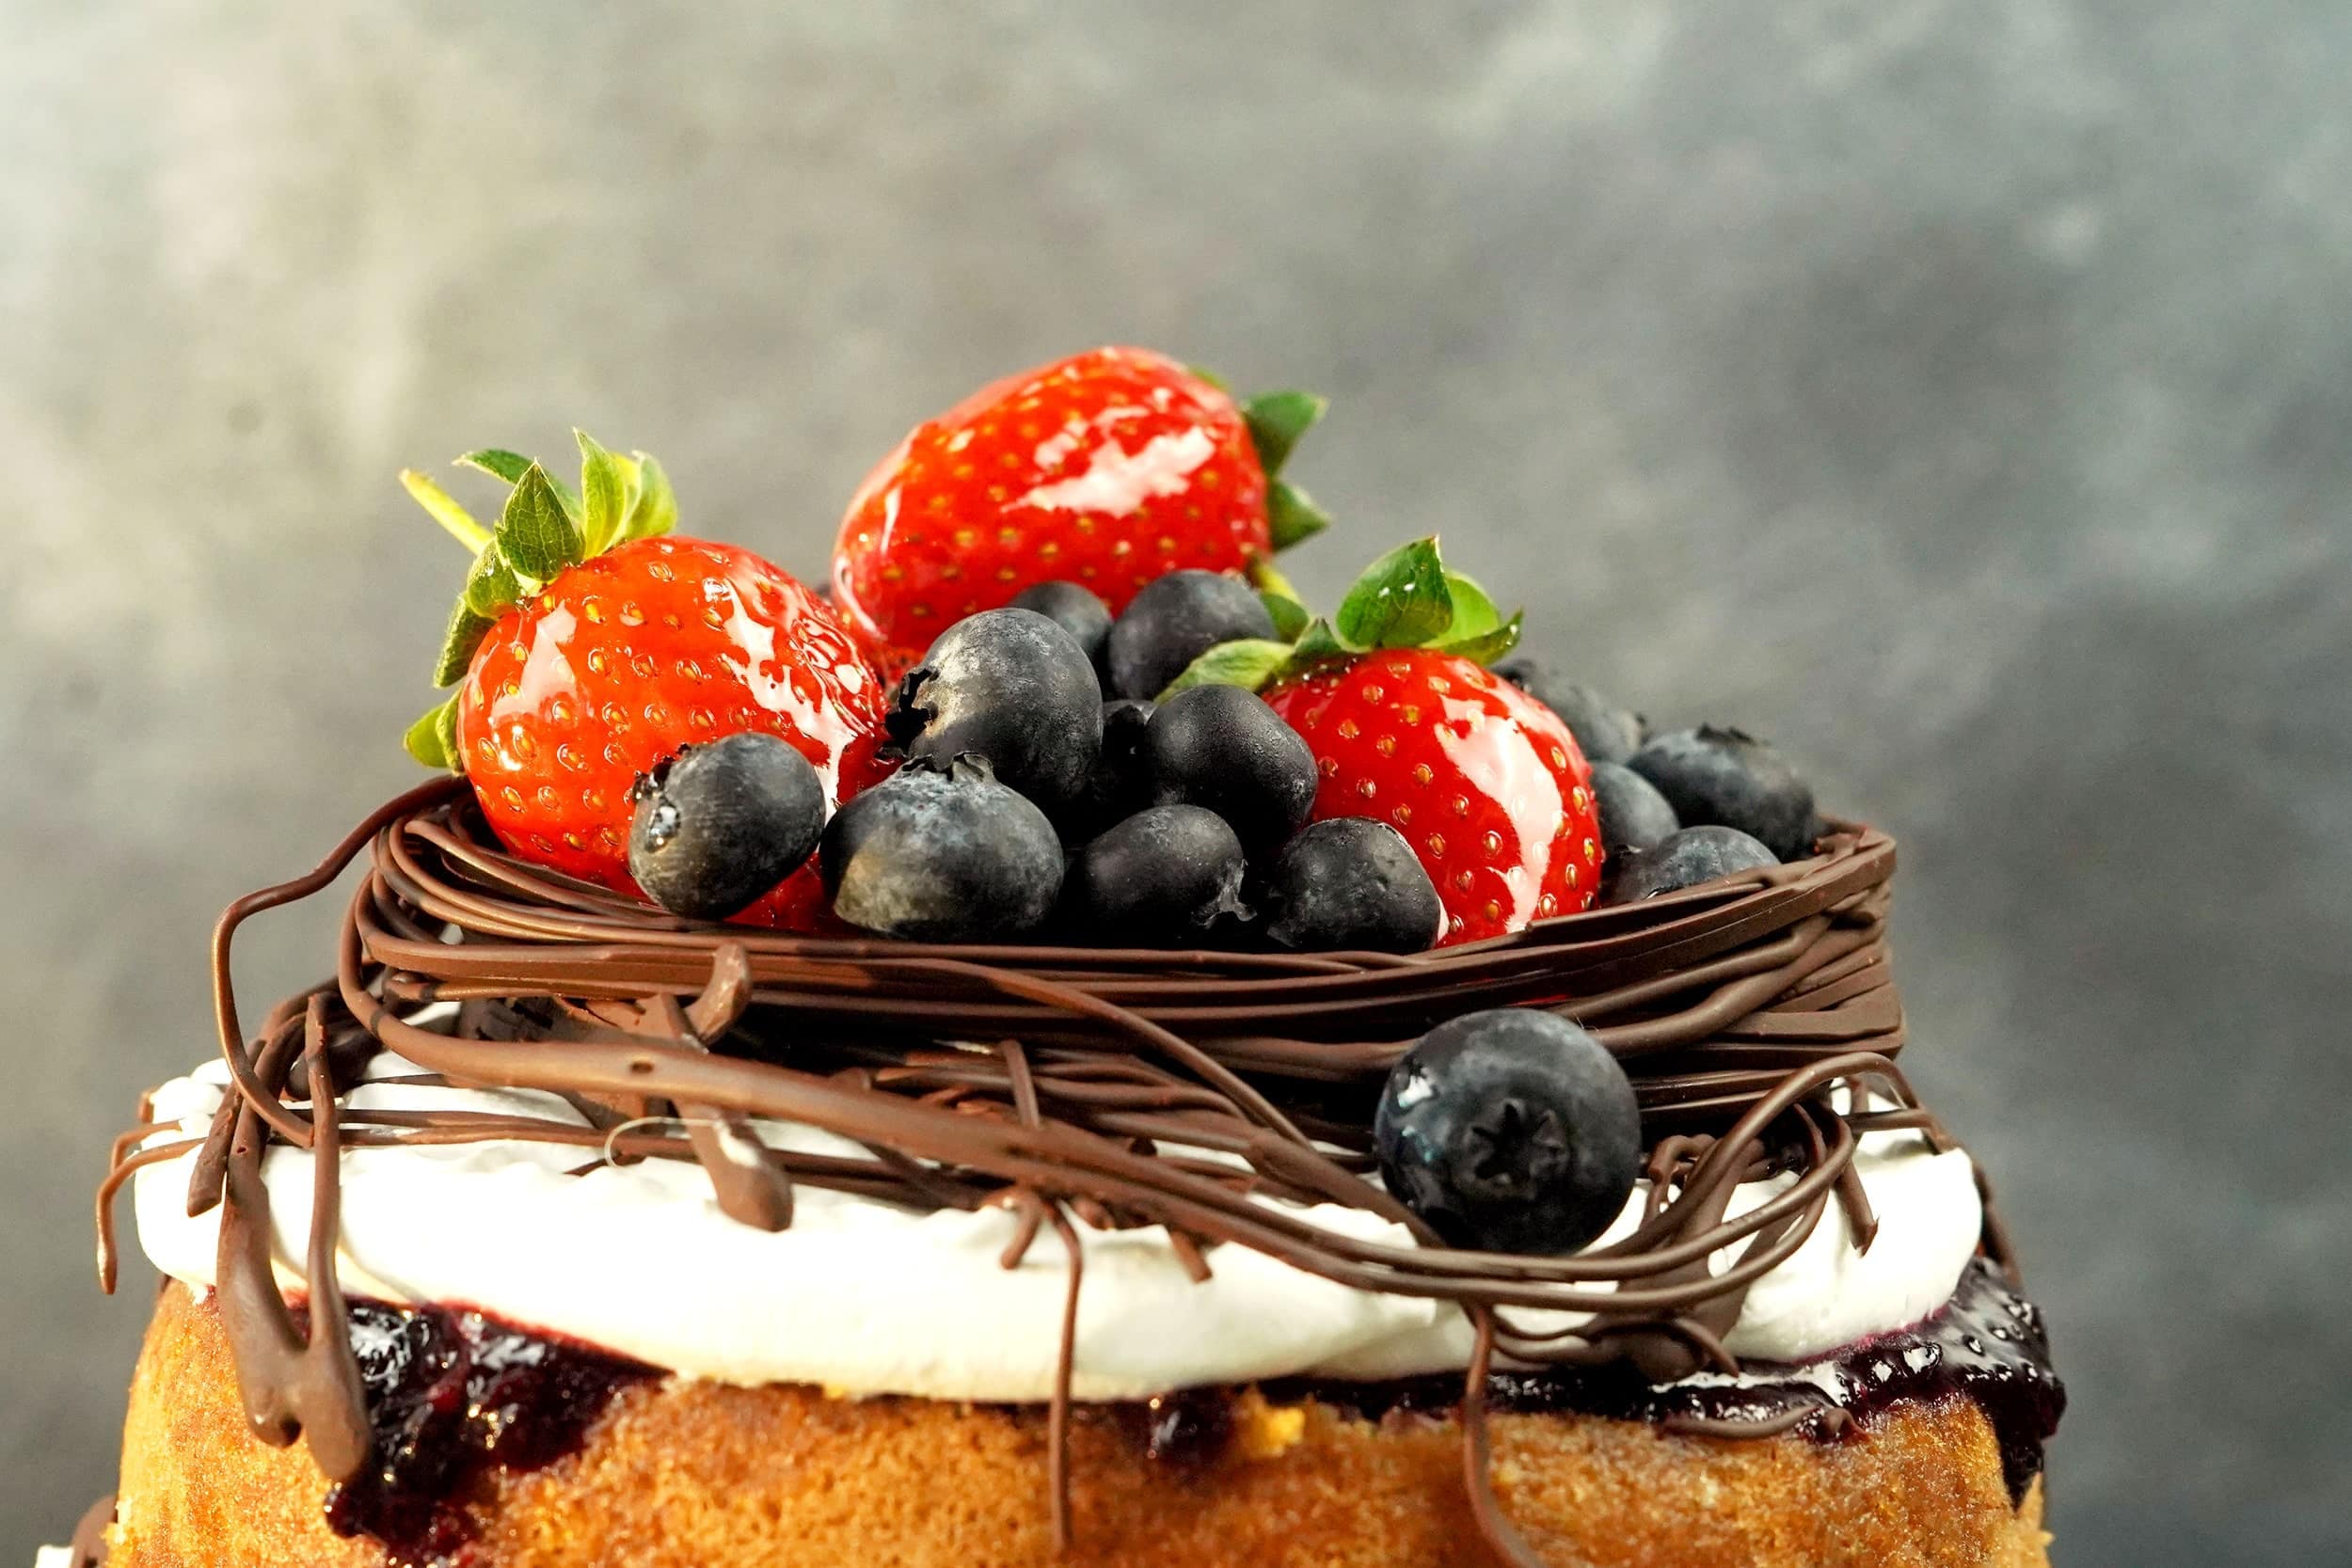 Cake It Away - Merrylands in Merrylands West - Restaurant reviews